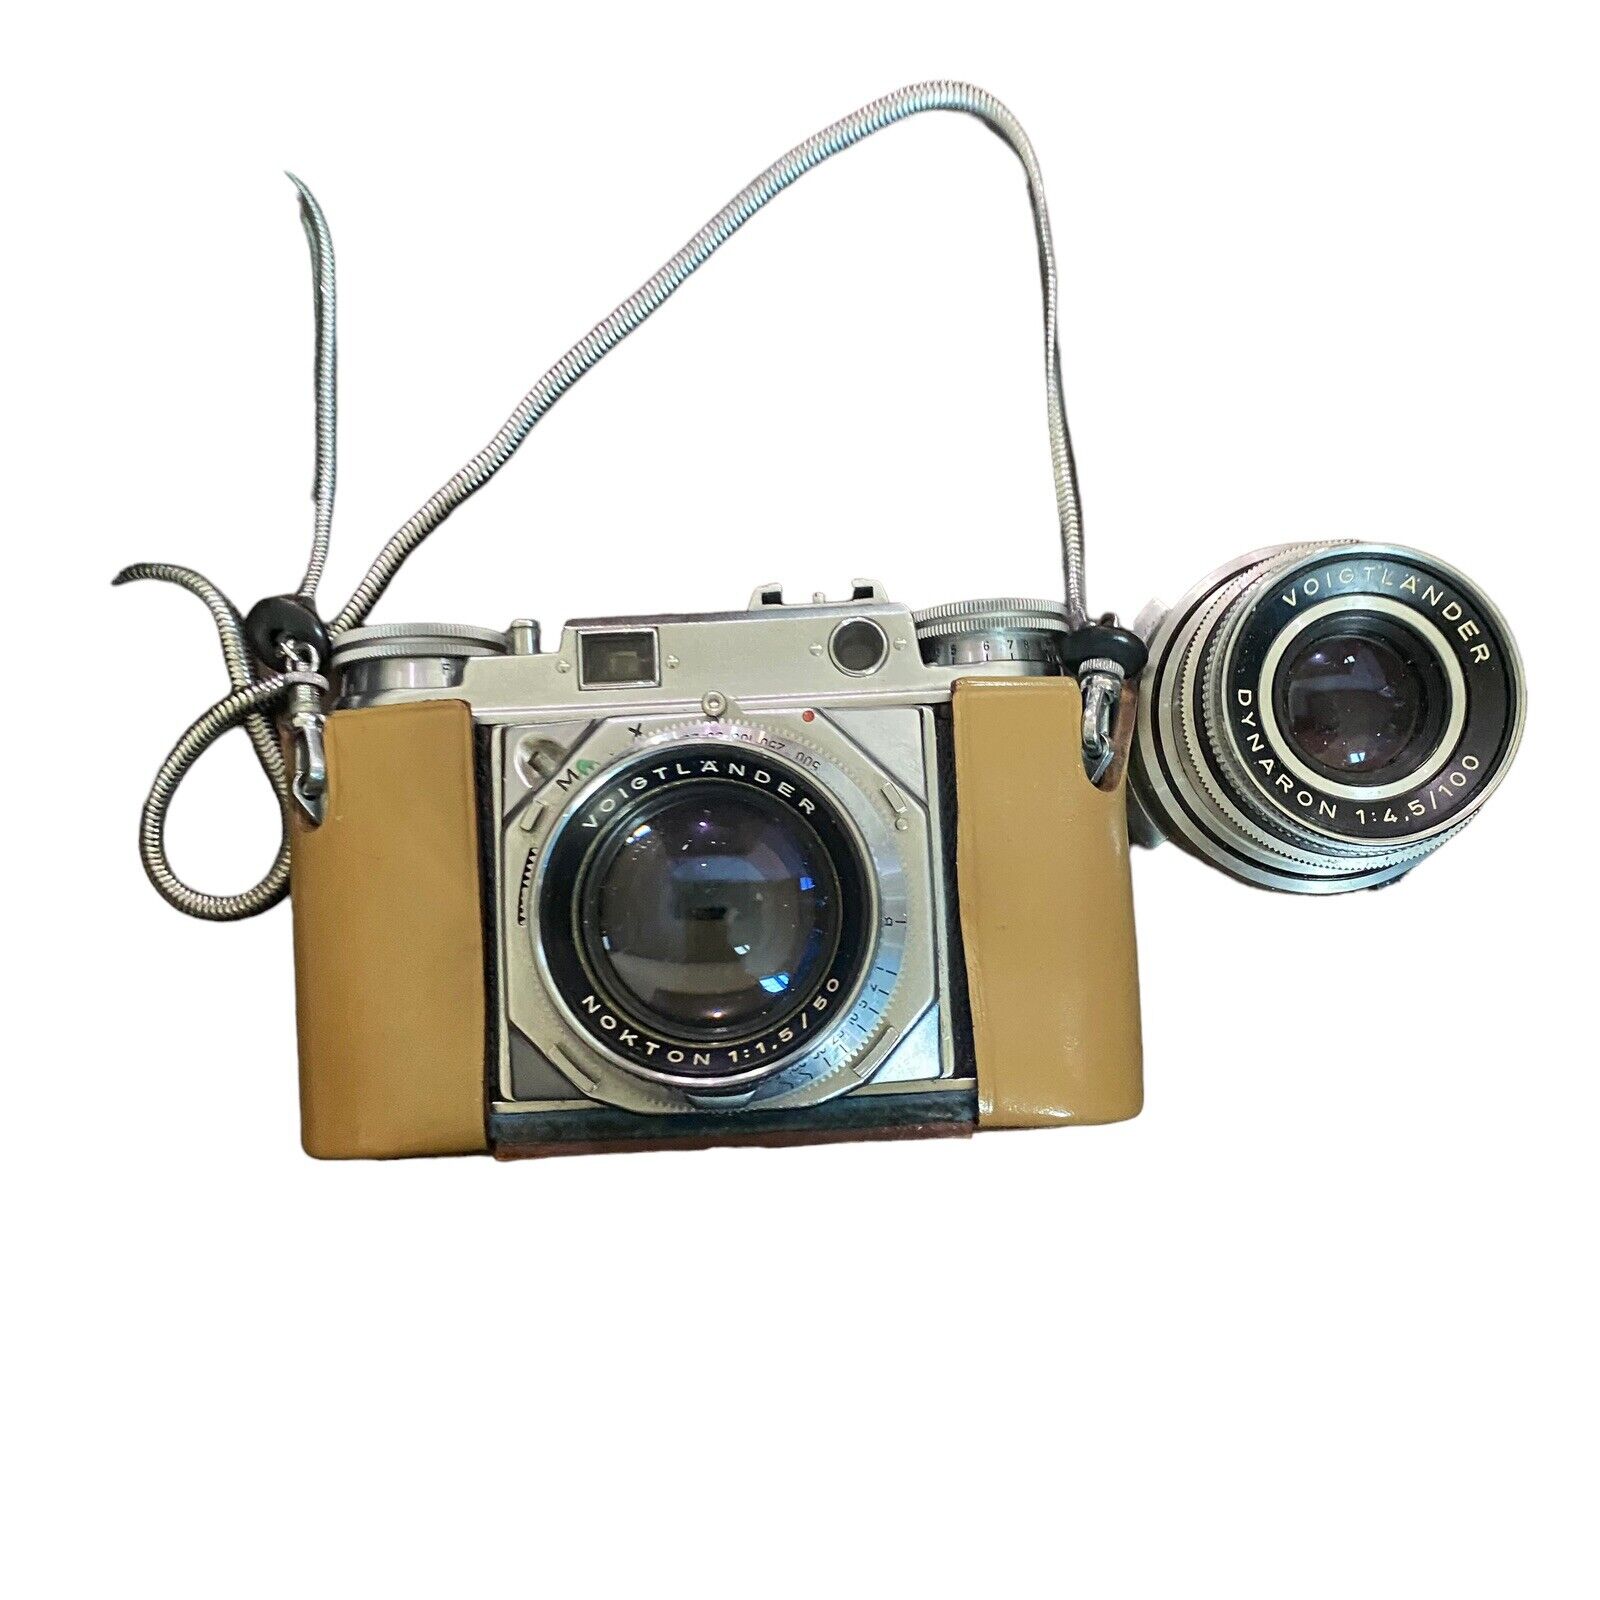 Voigtlander Prominent Camera B59310 + Voigtlander Nokton  1:1.5/50 Lens Mint-